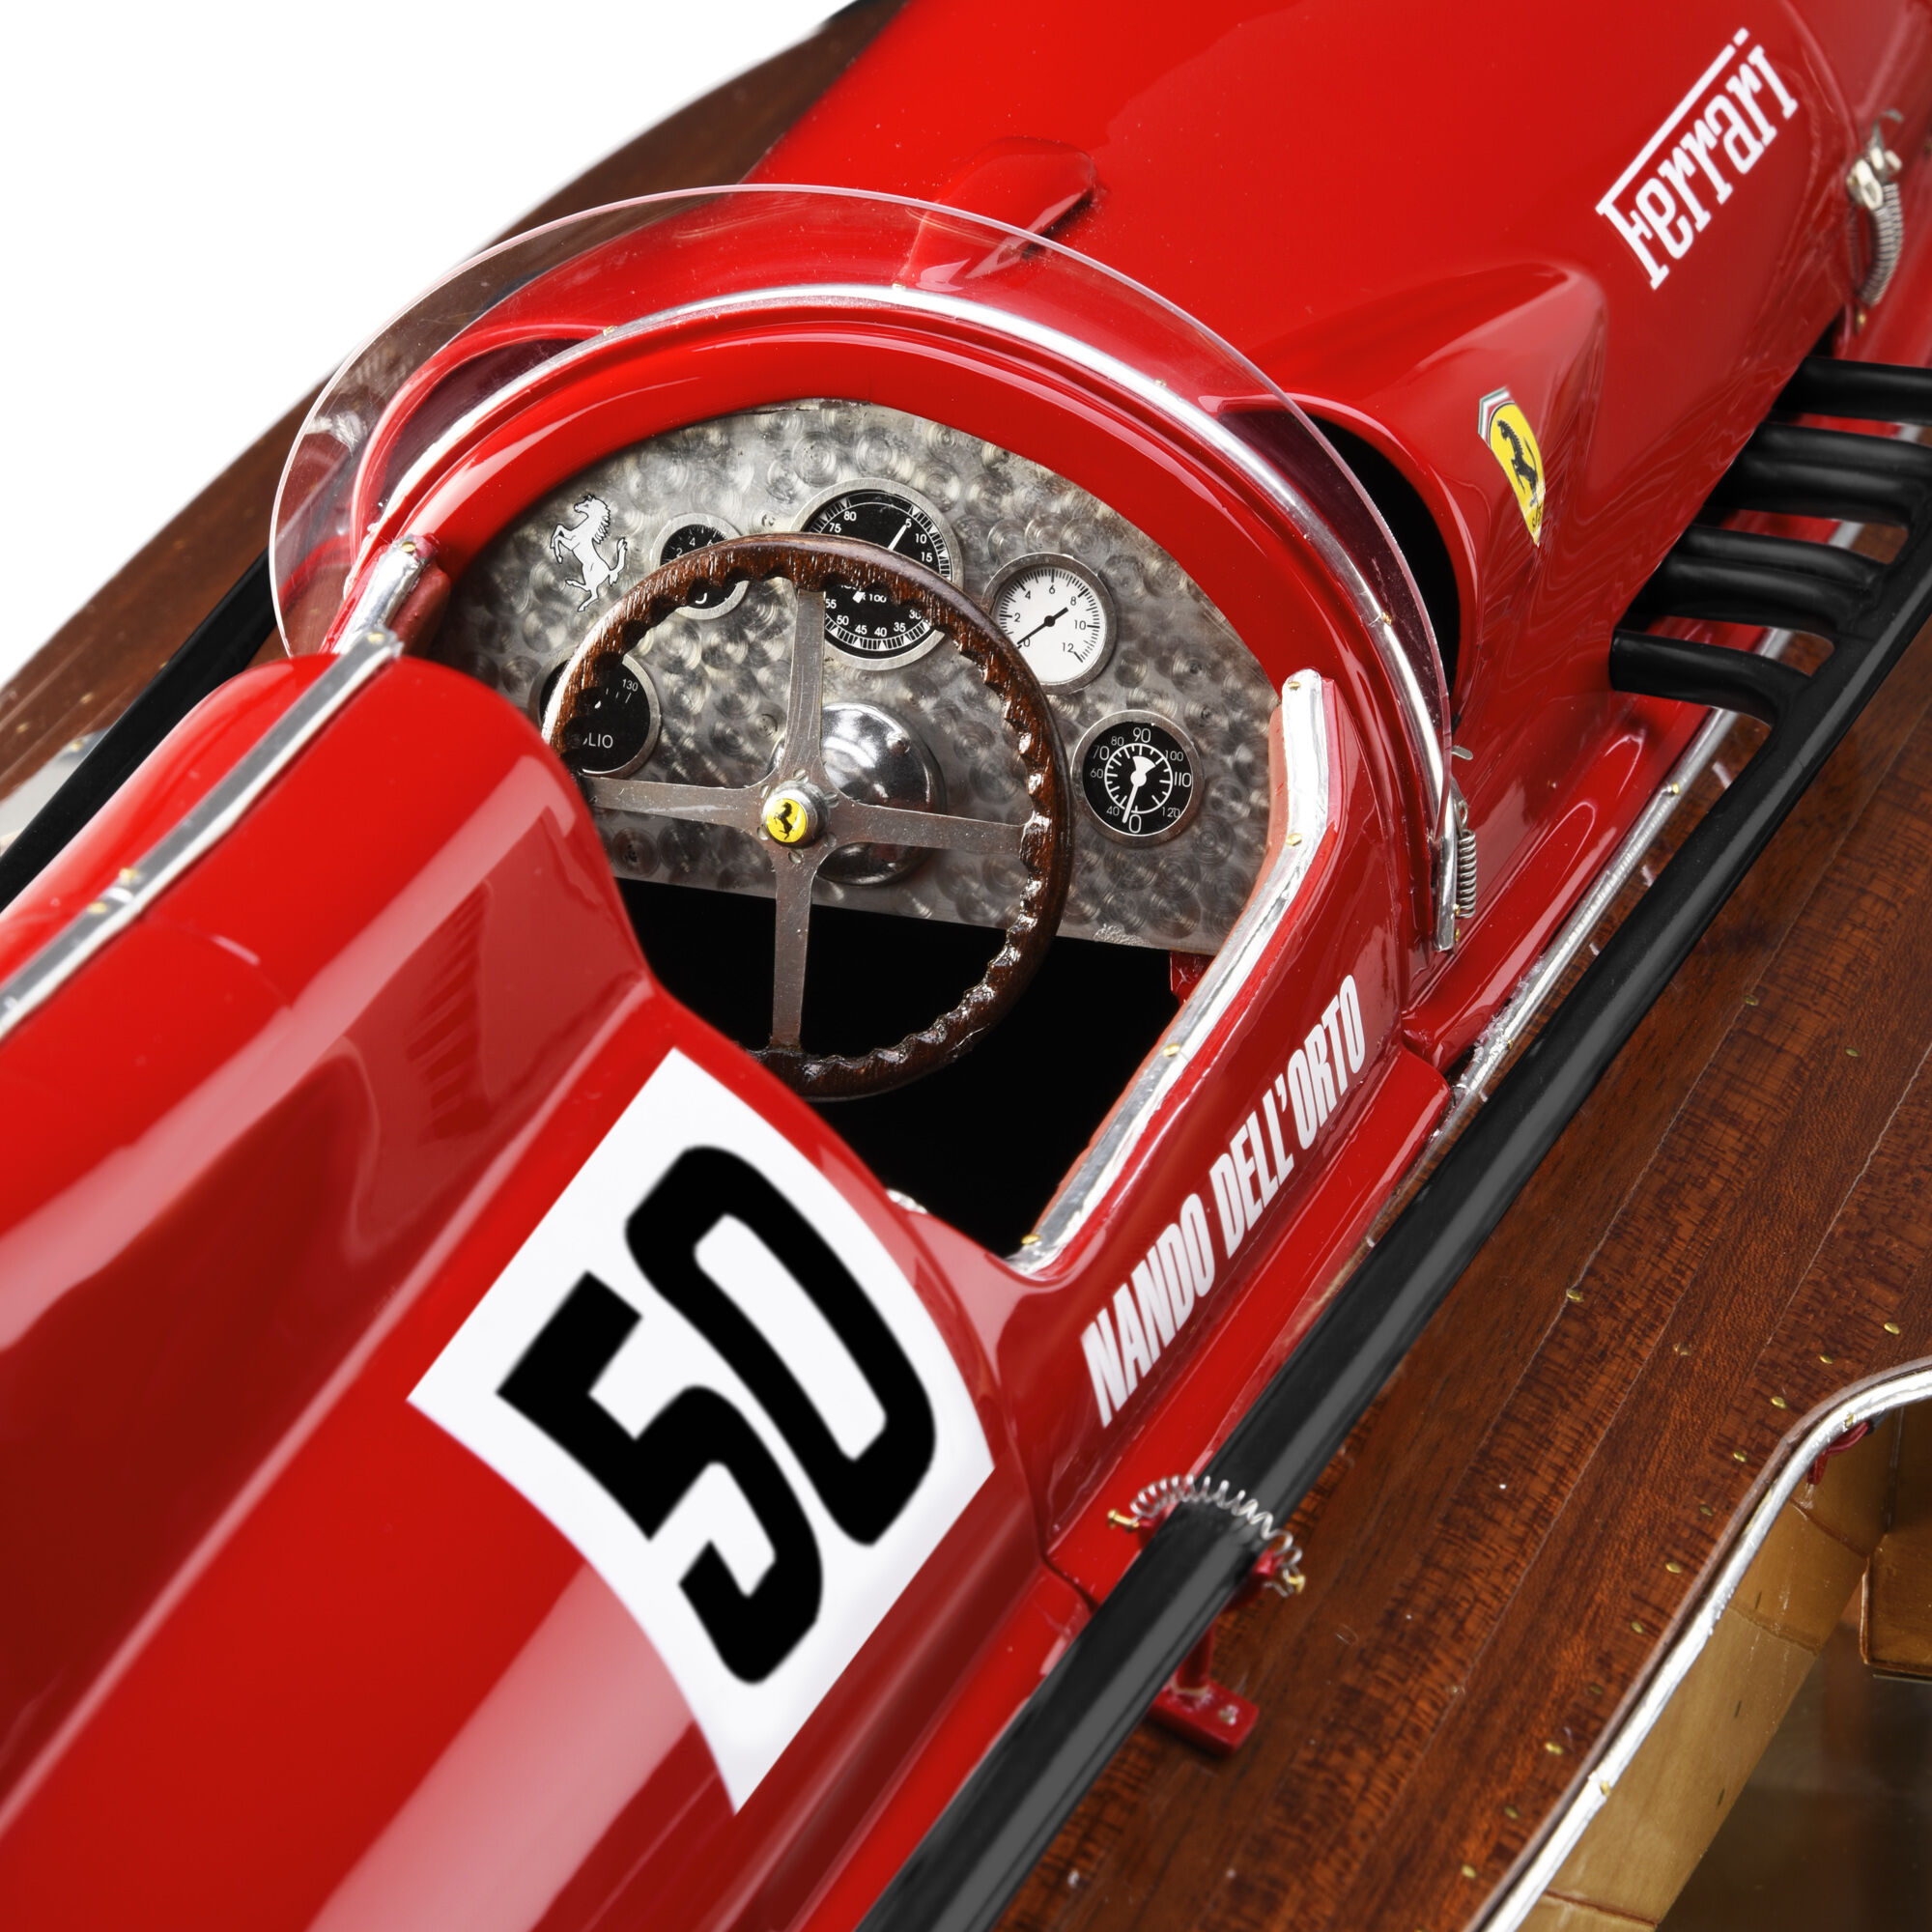 Ferrari Miniatura lancha Arno XI a escala 1:8 en edición limitada MULTICOLOR 40610f